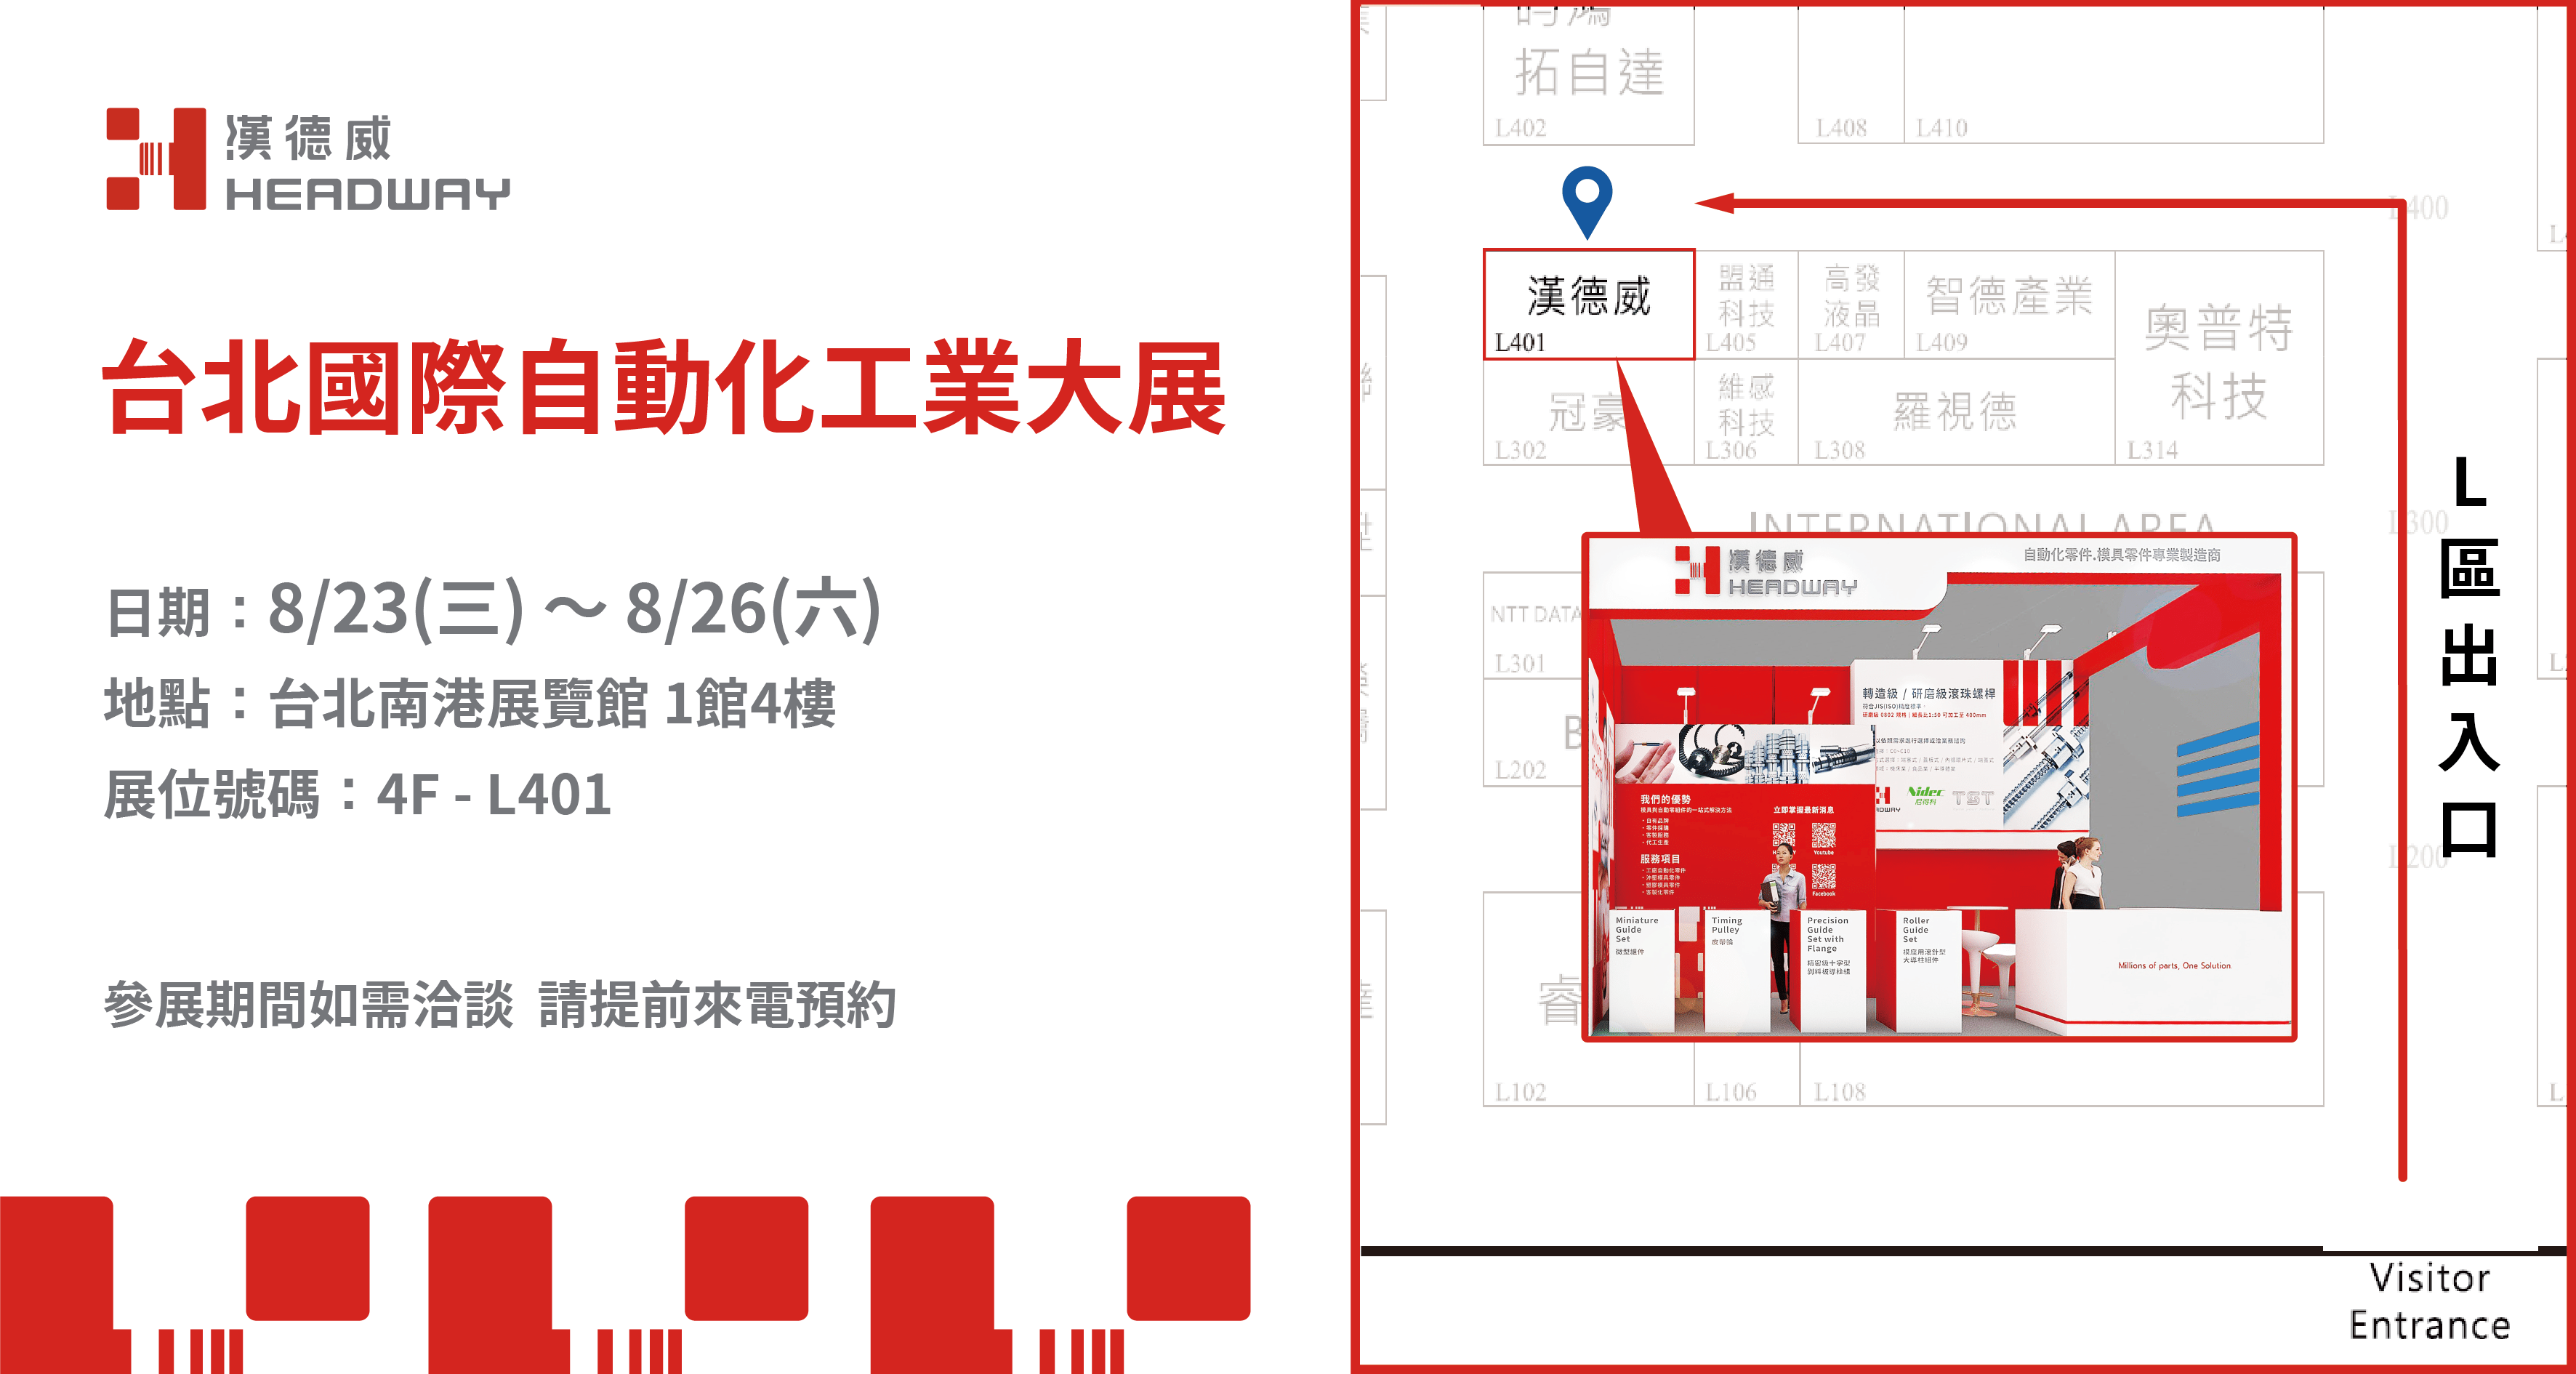 HEADWAY台北國際自動化工業大展位置圖